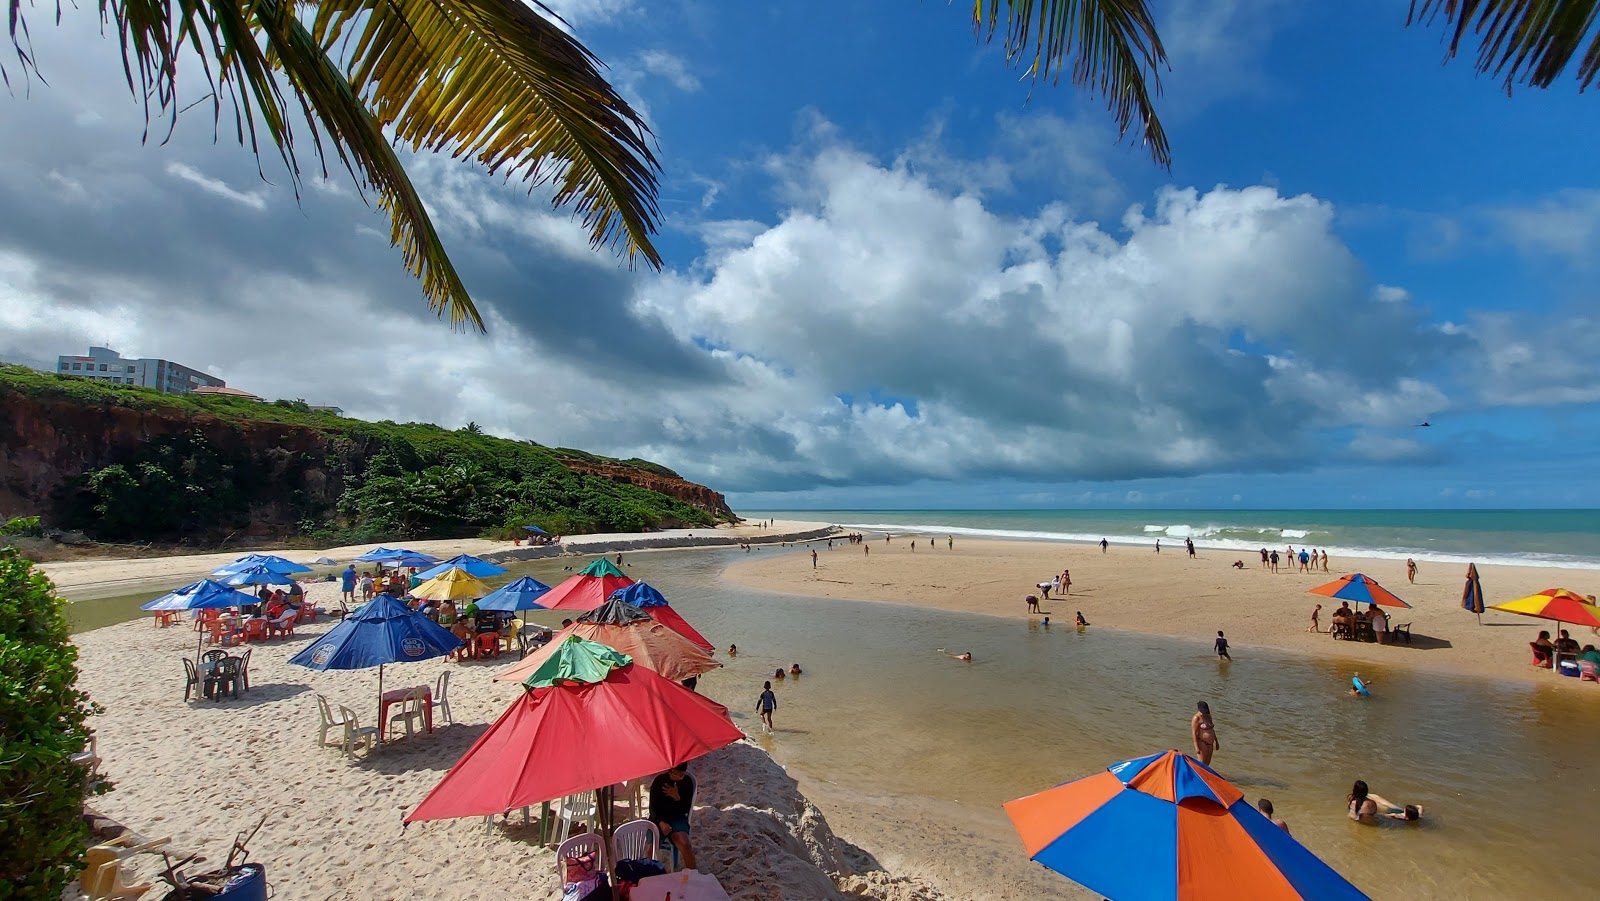 Praia Bela'in fotoğrafı parlak ince kum yüzey ile